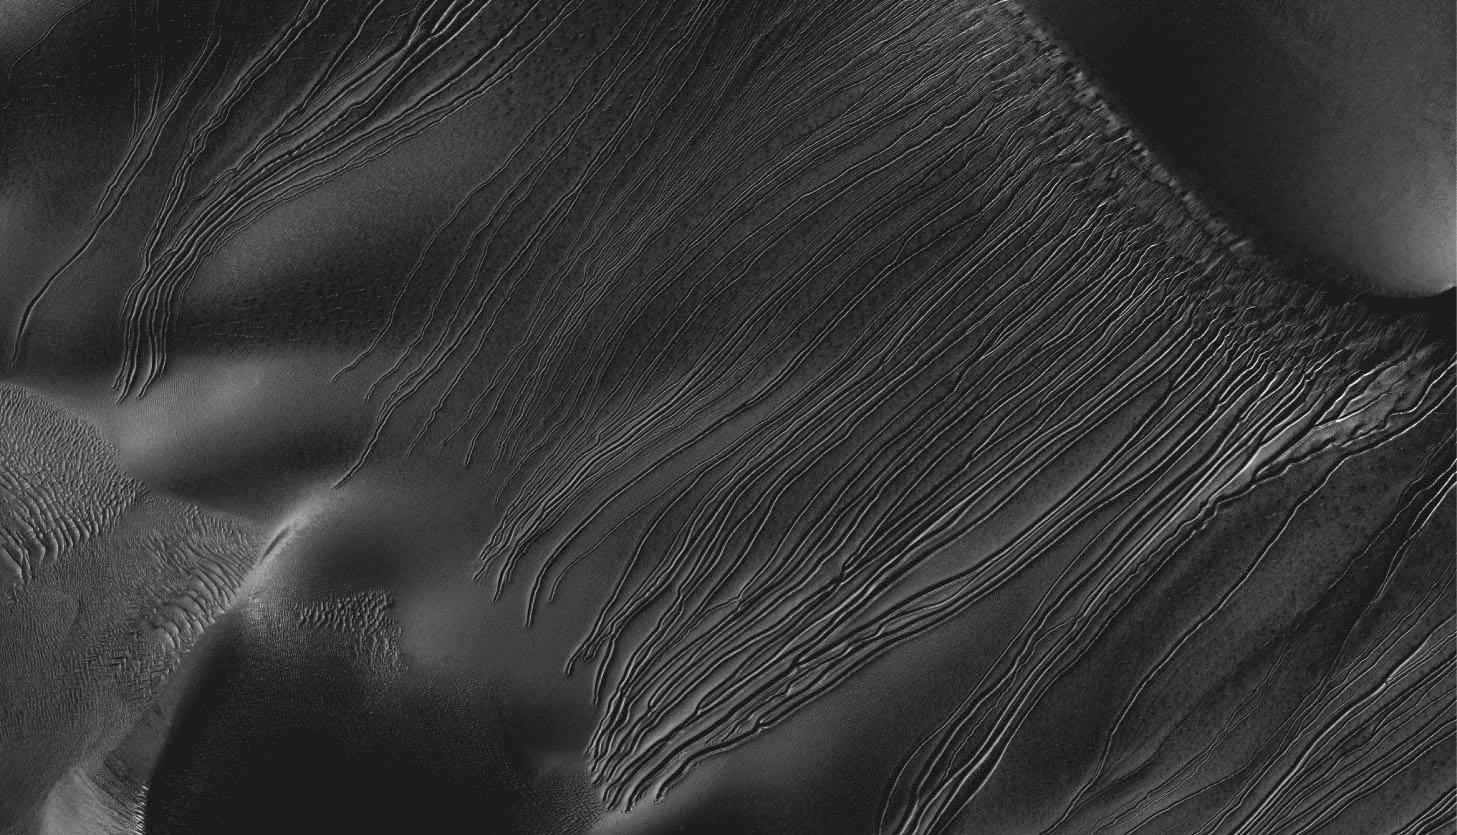 Luge de glace sèche sur Mars